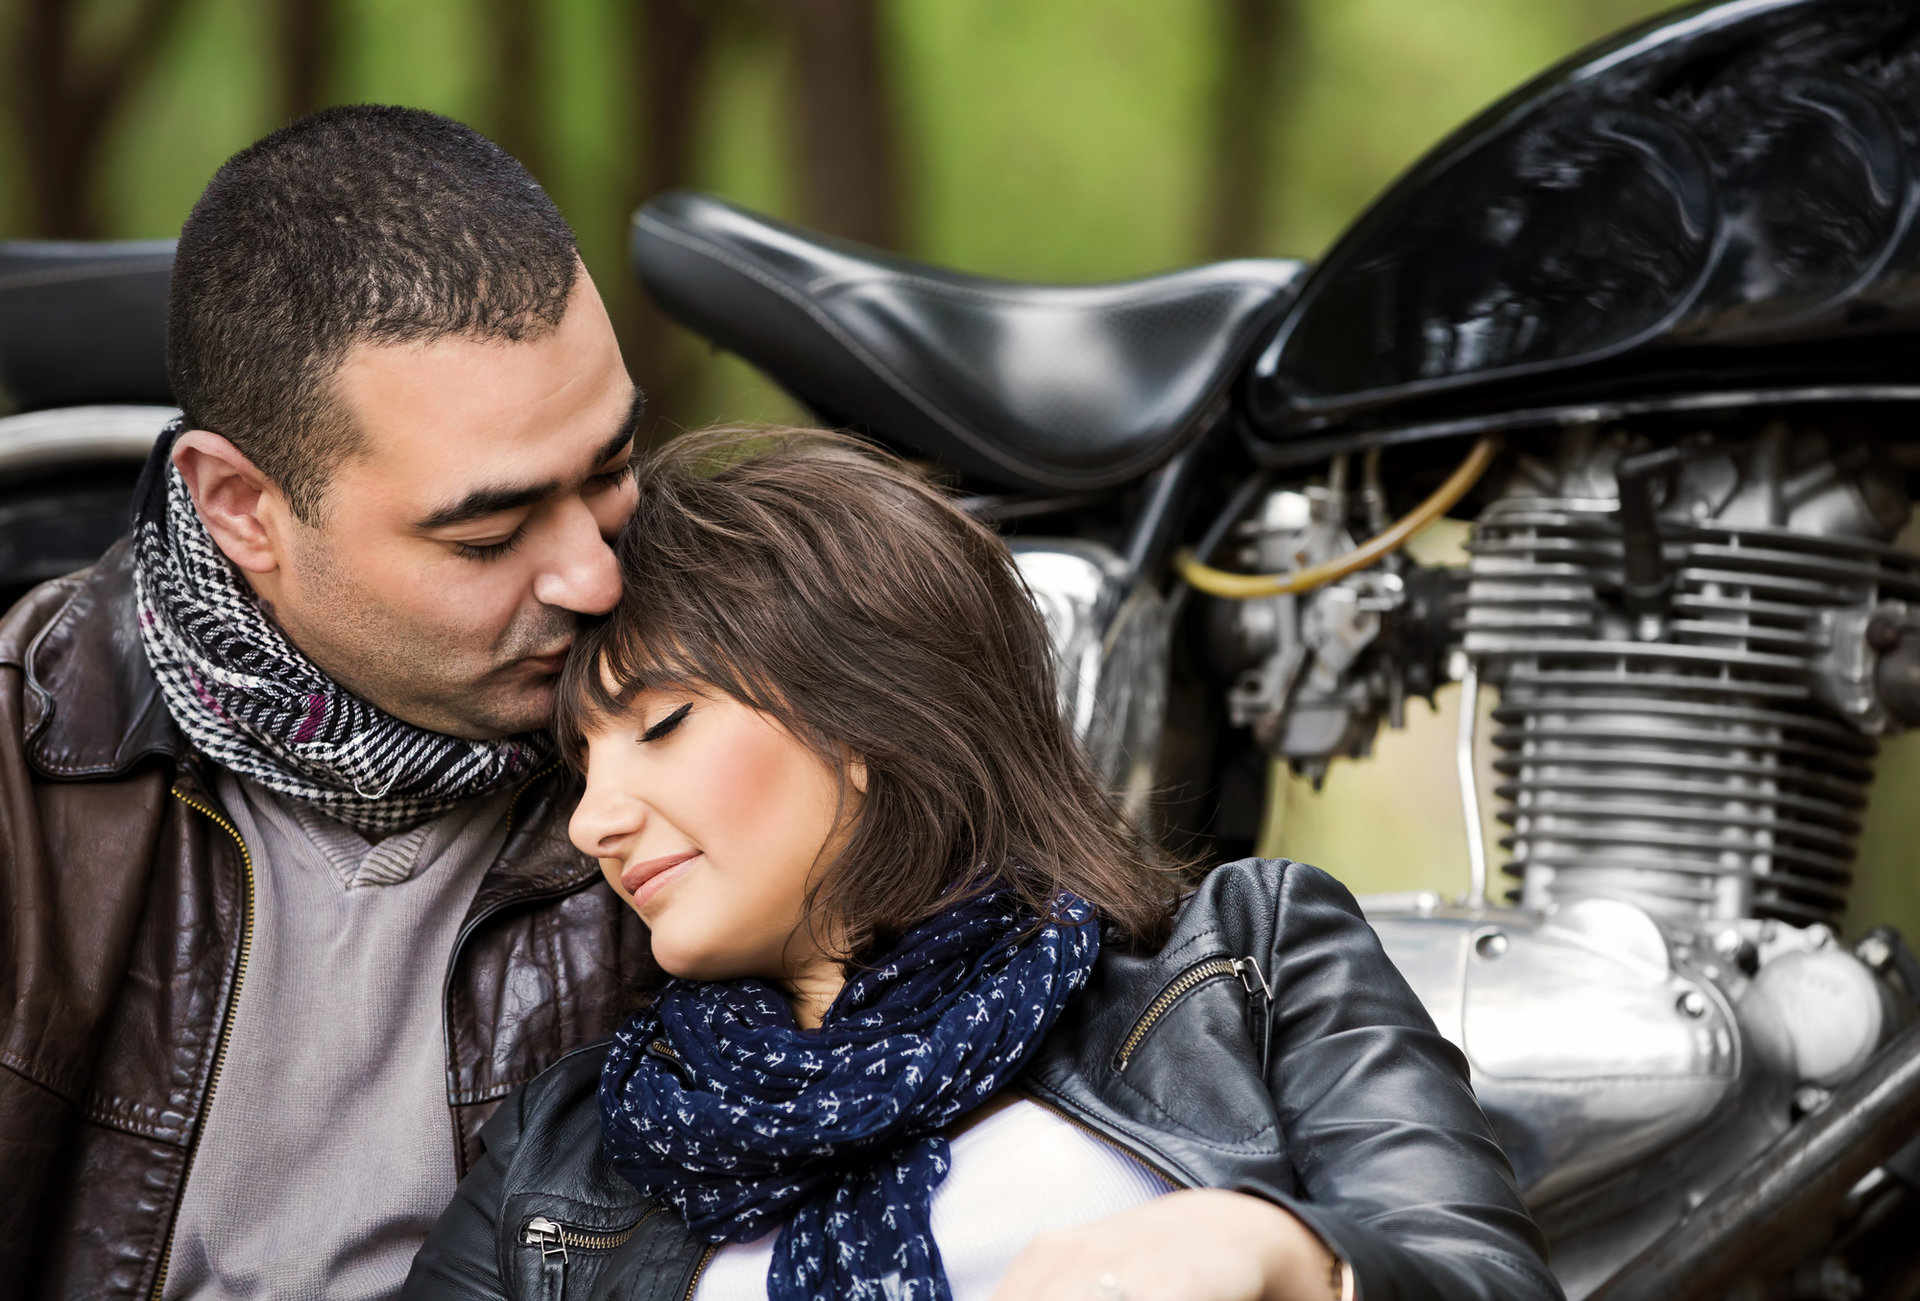 Motorrad - Partnerschaften - Kontaktanzeigen für Singles auf Partnersuche